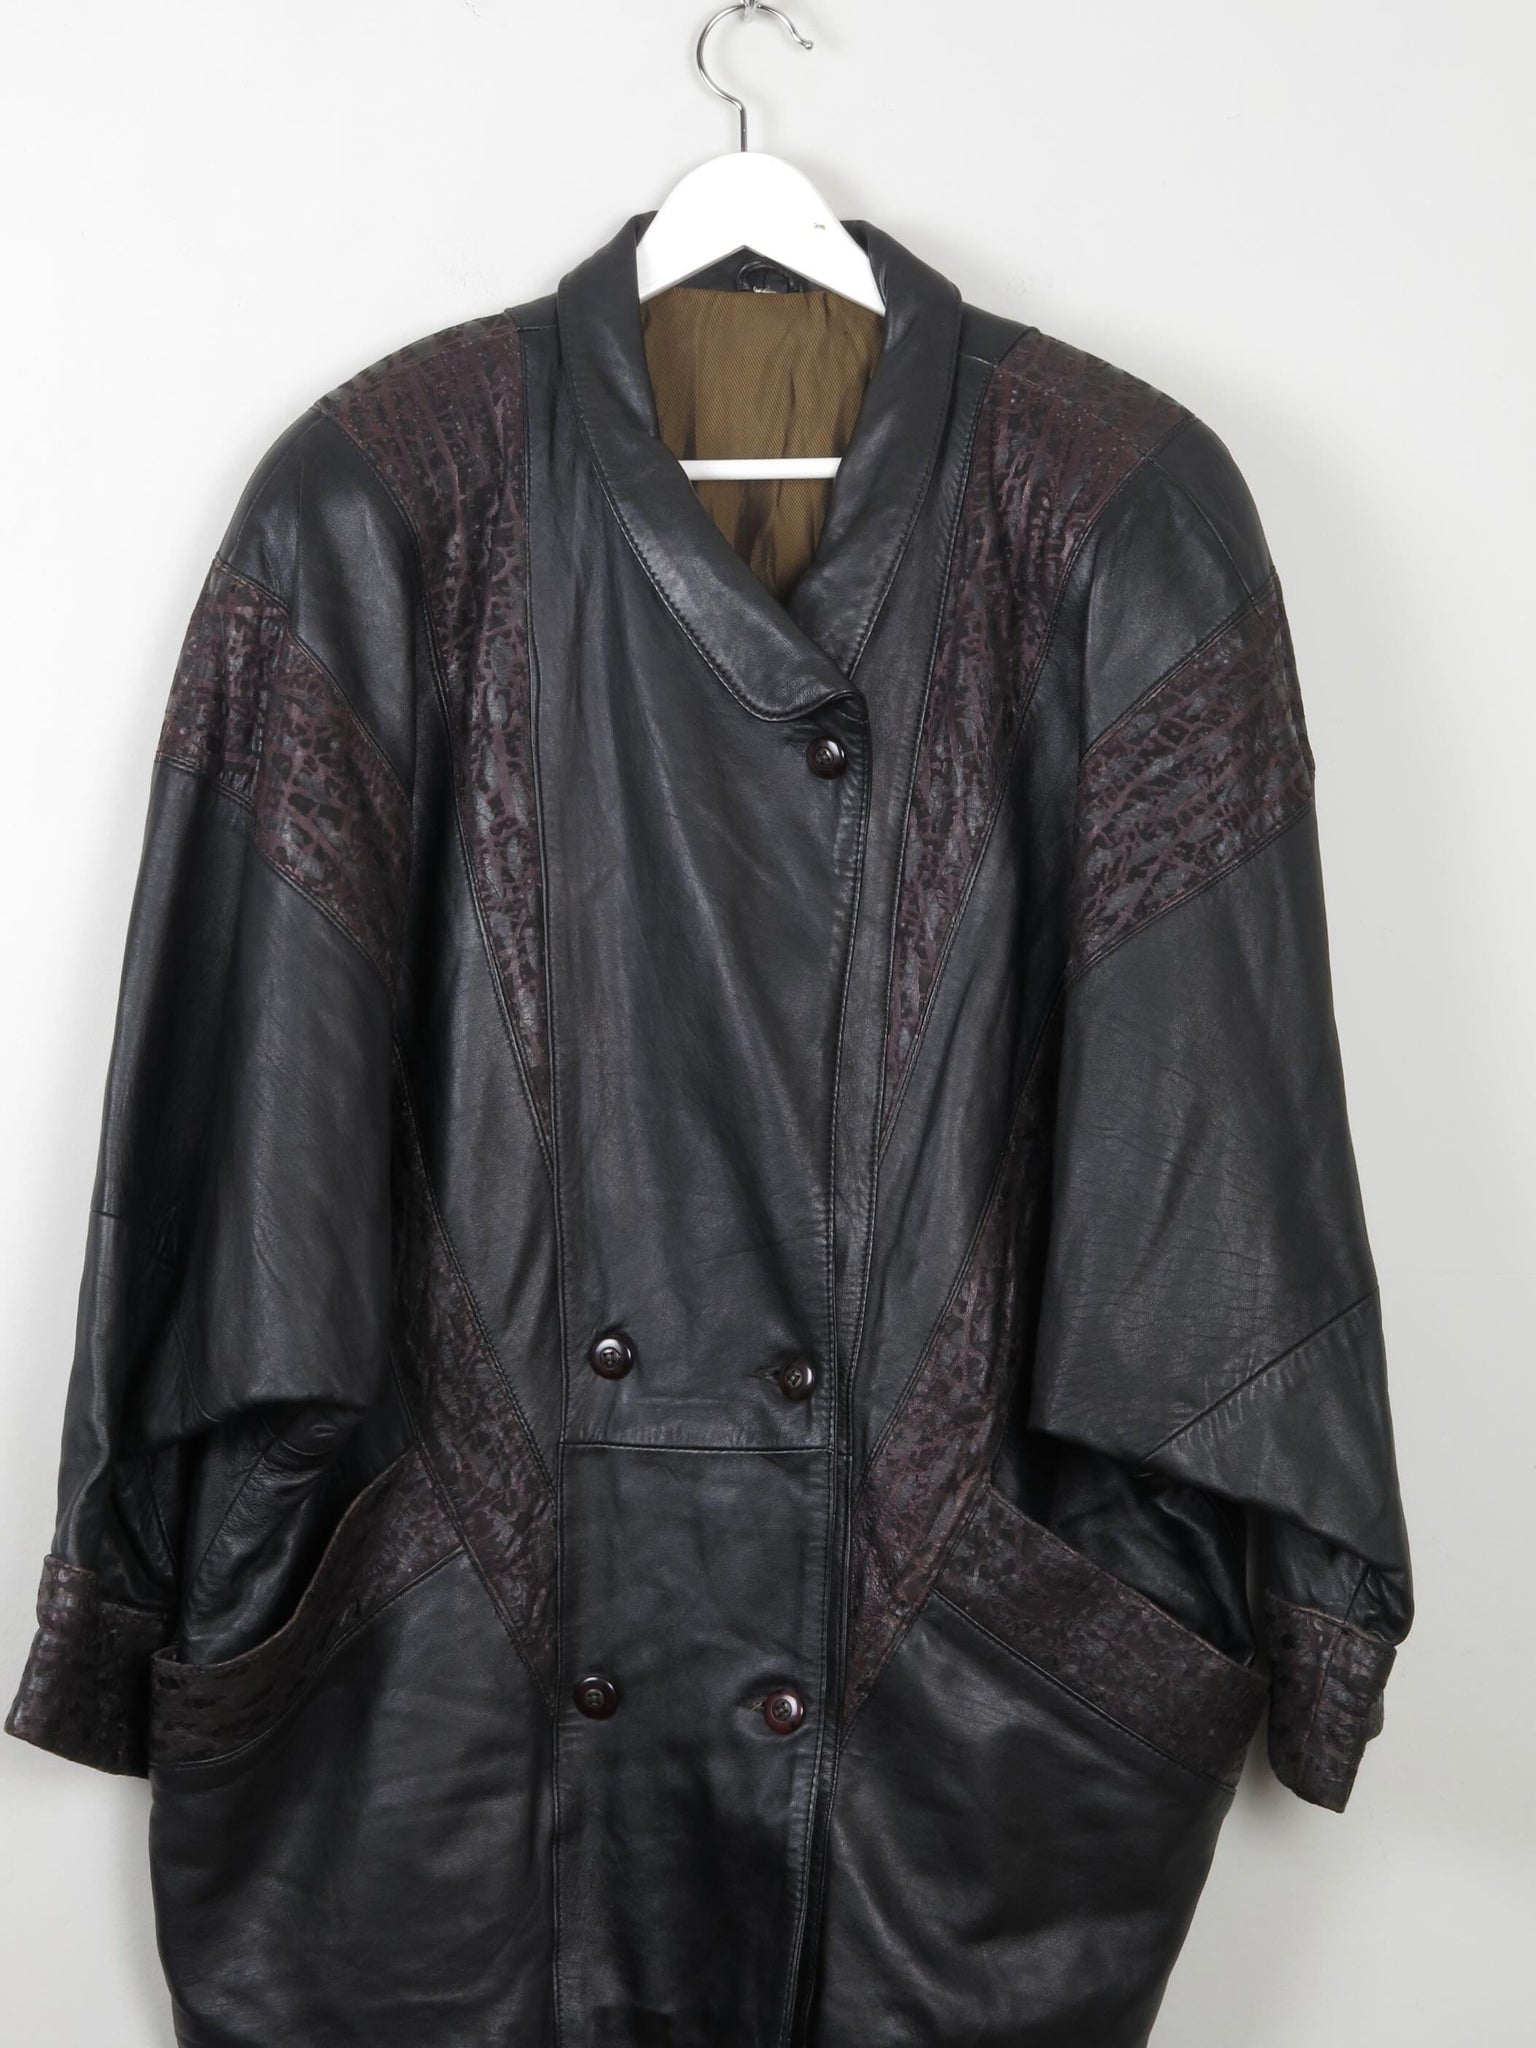 Women's Vintage Black Leather 80s Jacket L - The Harlequin